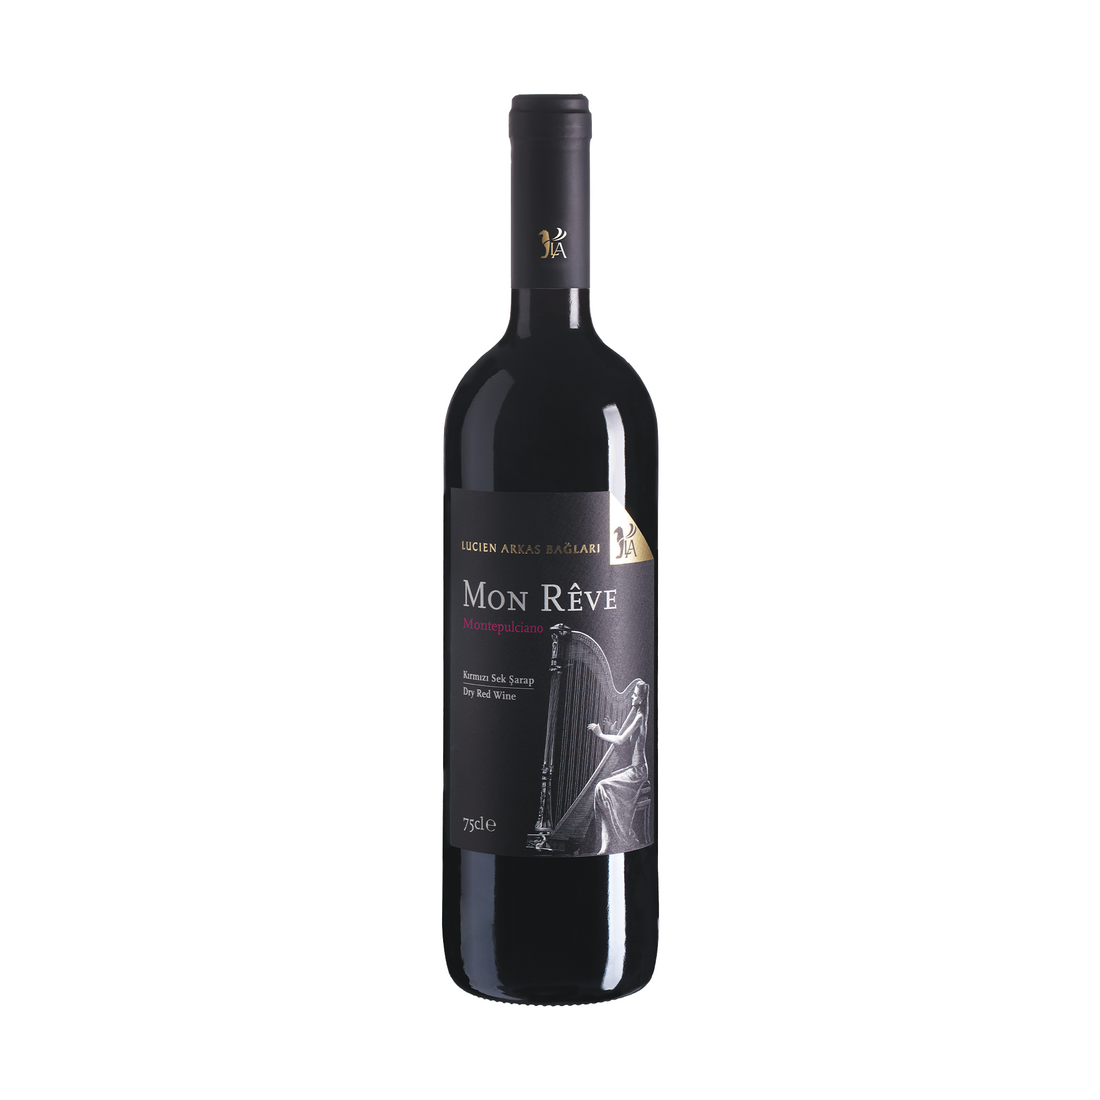 Lucien Arkas Mon Reve Montepulciano 750ml Organik Kırmızı Sek Şarap